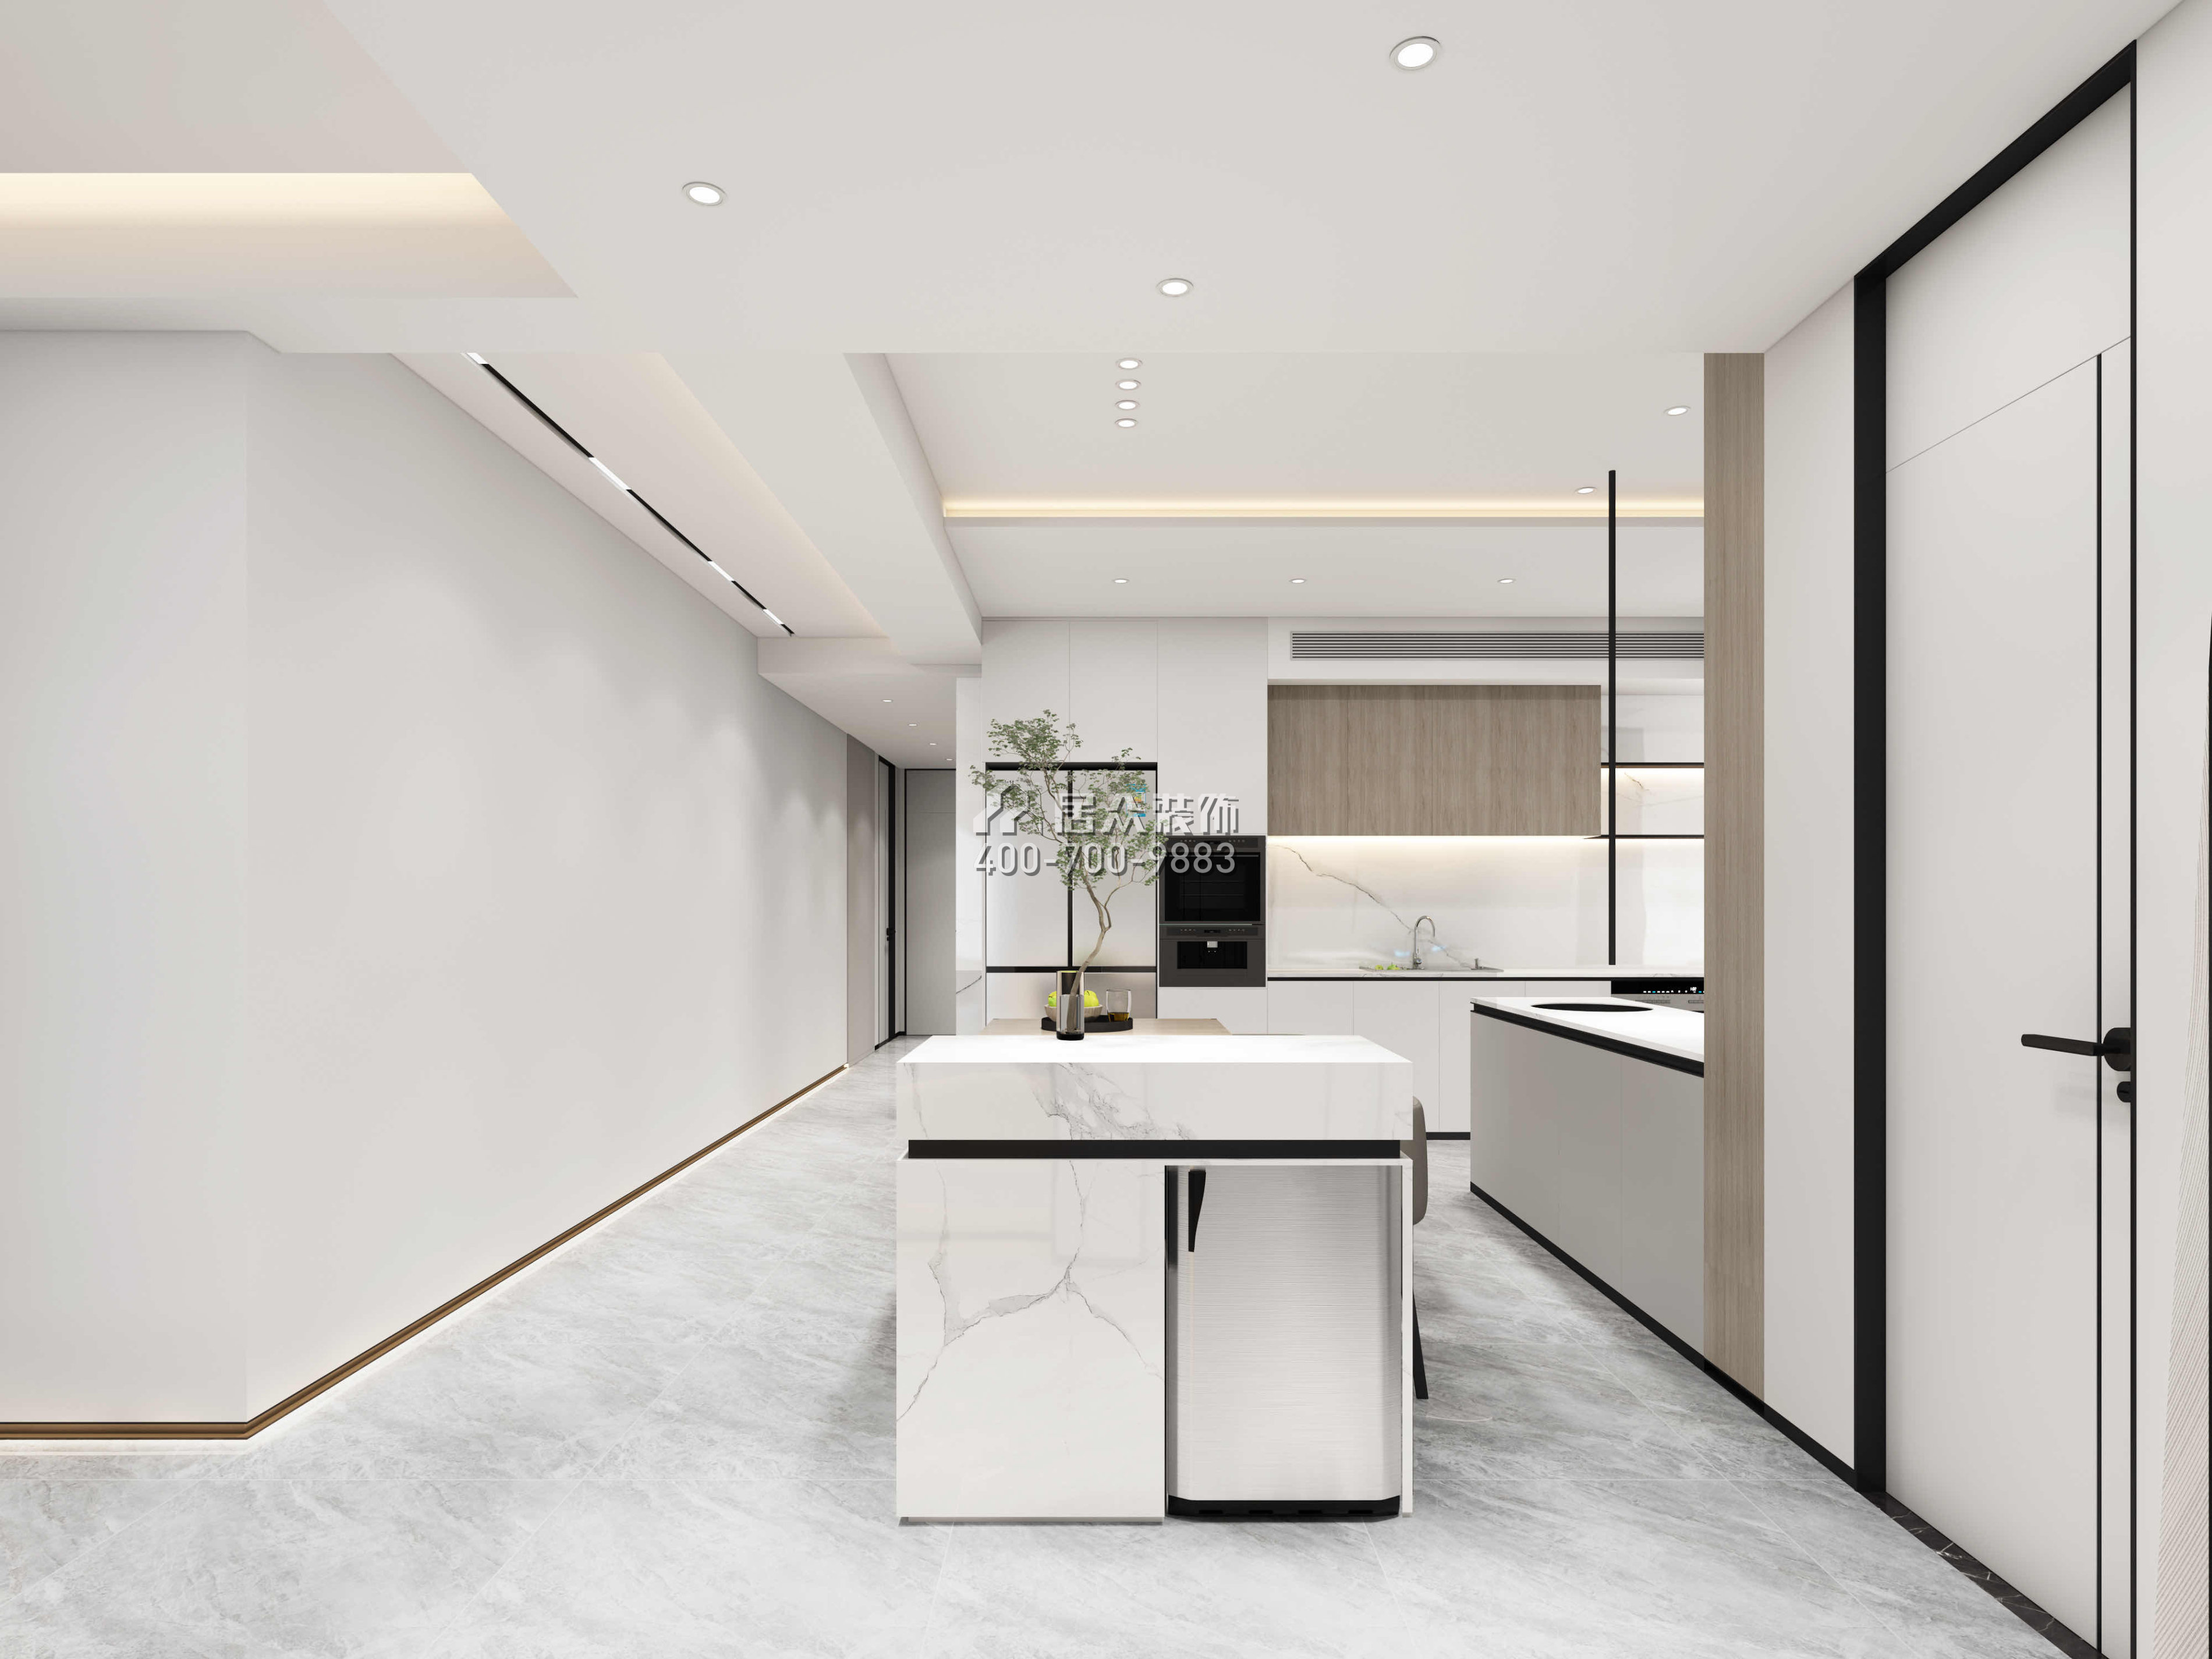 安柏麗晶200平方米現代簡約風格平層戶型廚房裝修效果圖